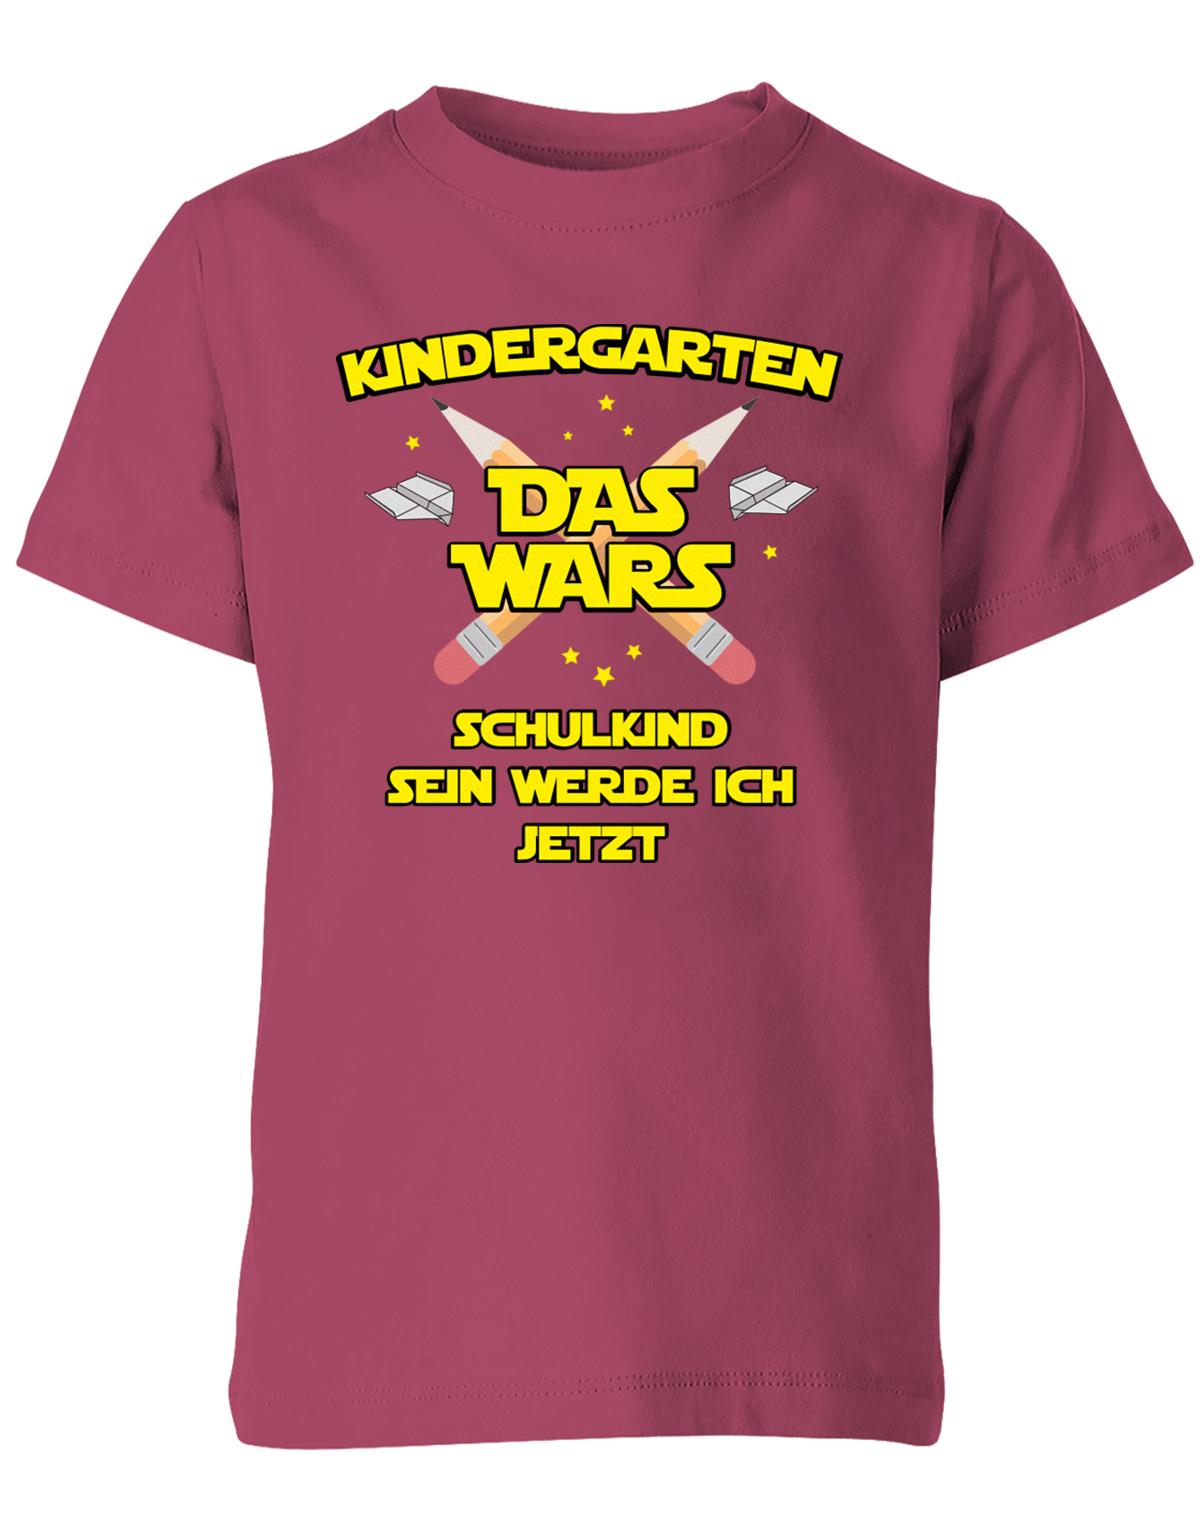 Kindergarten Das Wars Schulkind sein werde ich jetzt - Kita Abgänger Shirt Sorbet